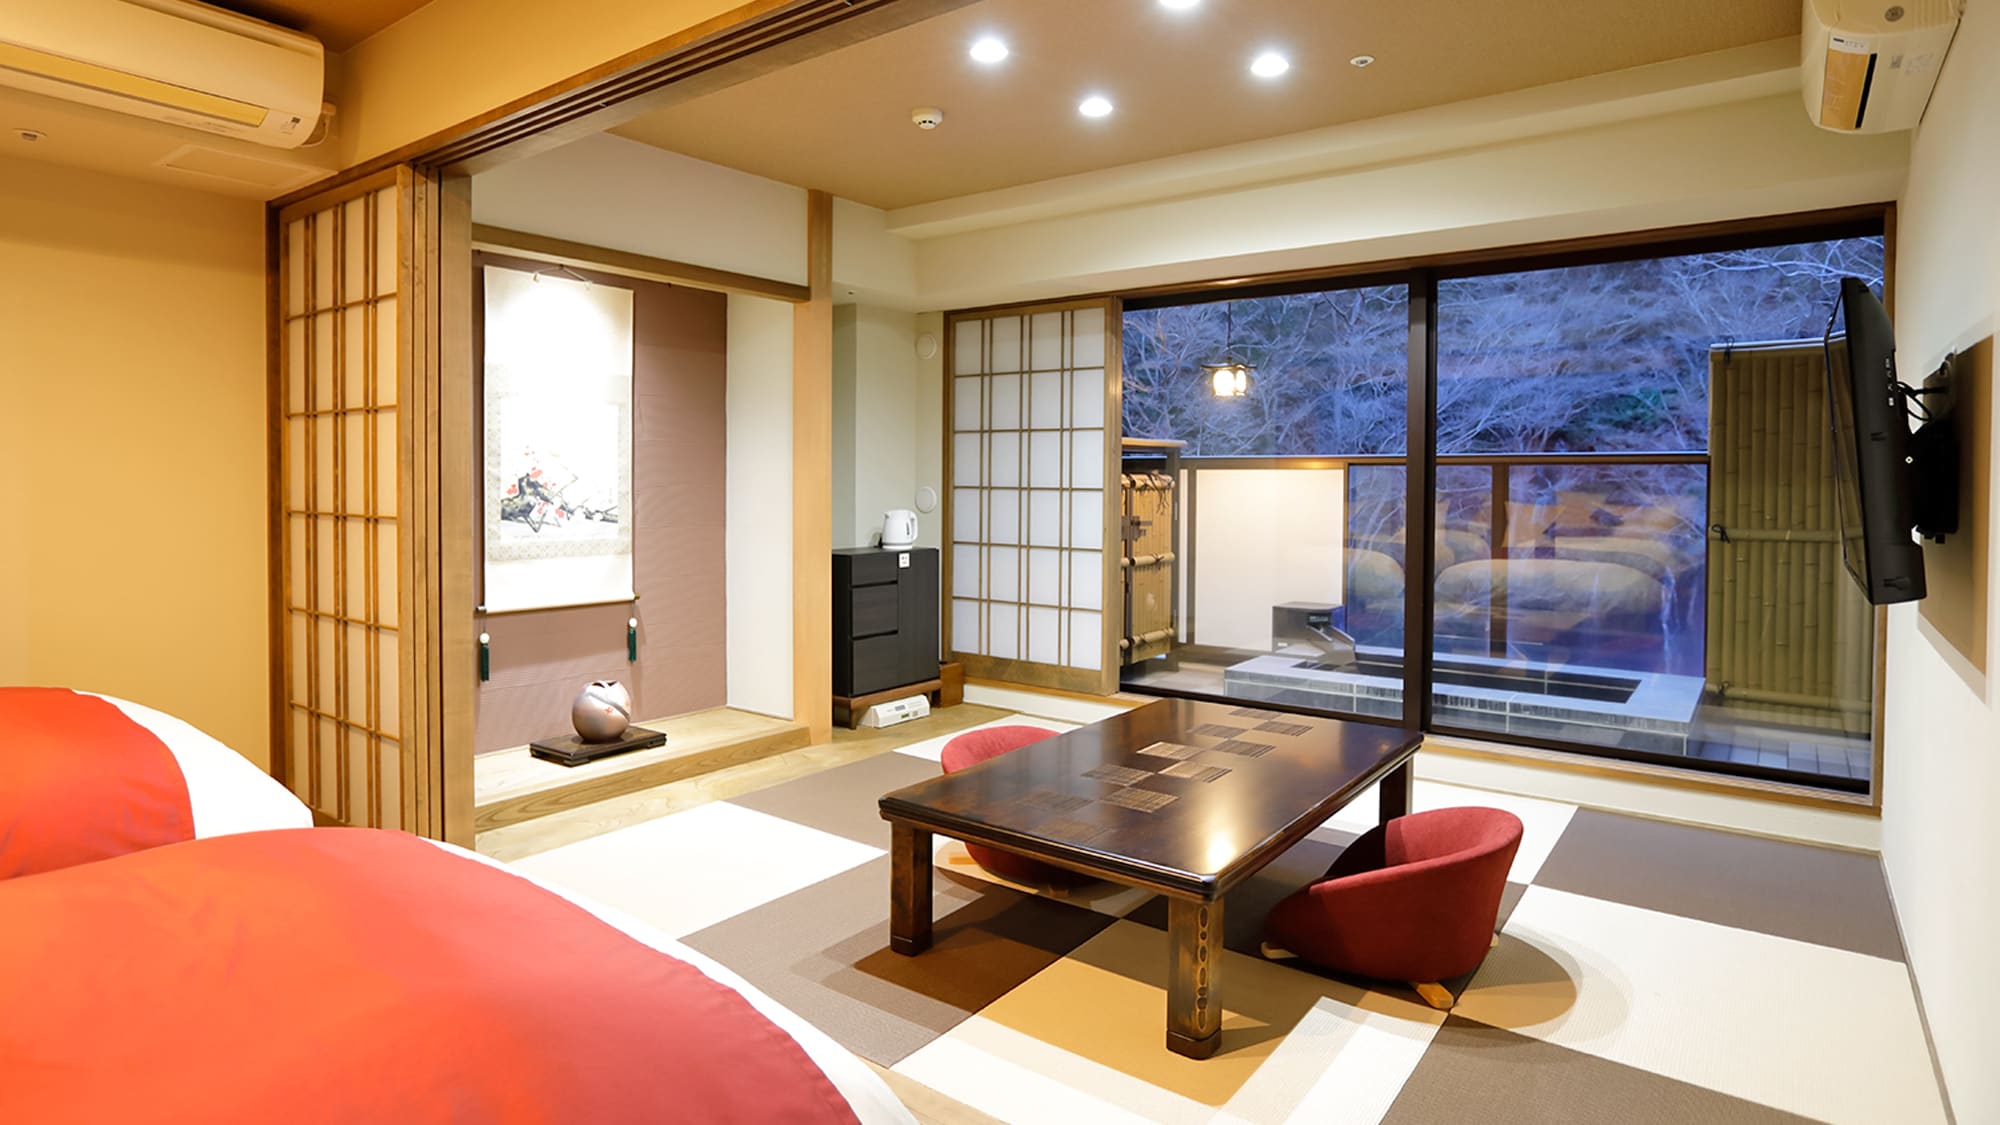 Kamar bergaya Jepang-Barat dengan bathtub terbuka bergaya Jepang modern yang menggabungkan kamar bergaya Jepang dan kamar tidur tempat Anda dapat bersantai.